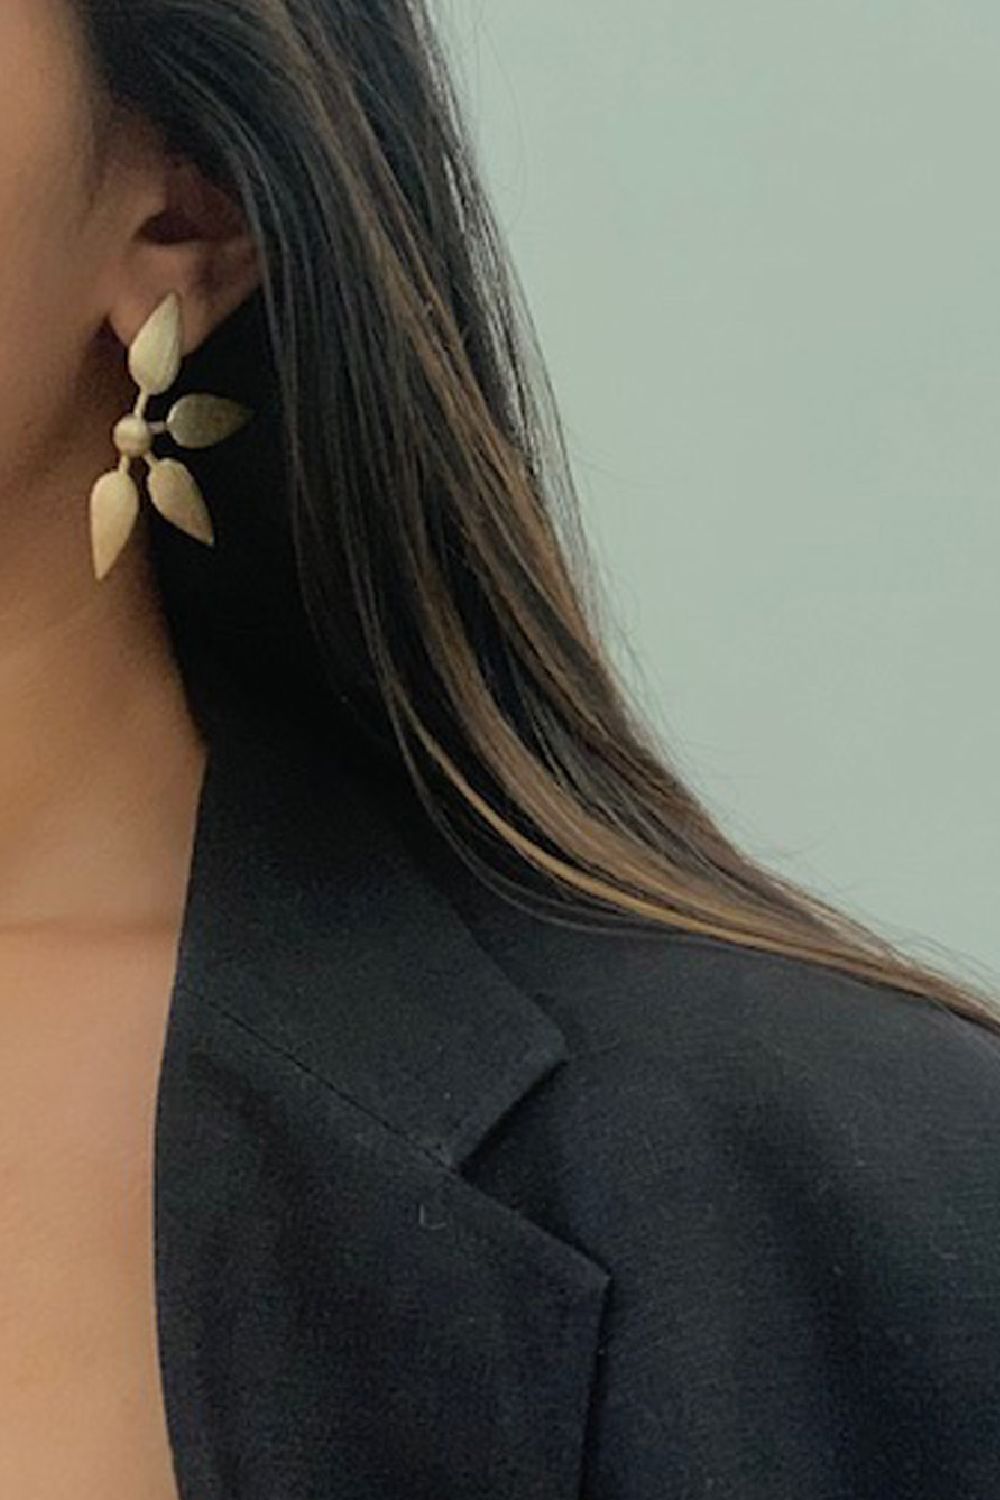 Golden Lotus Earrings